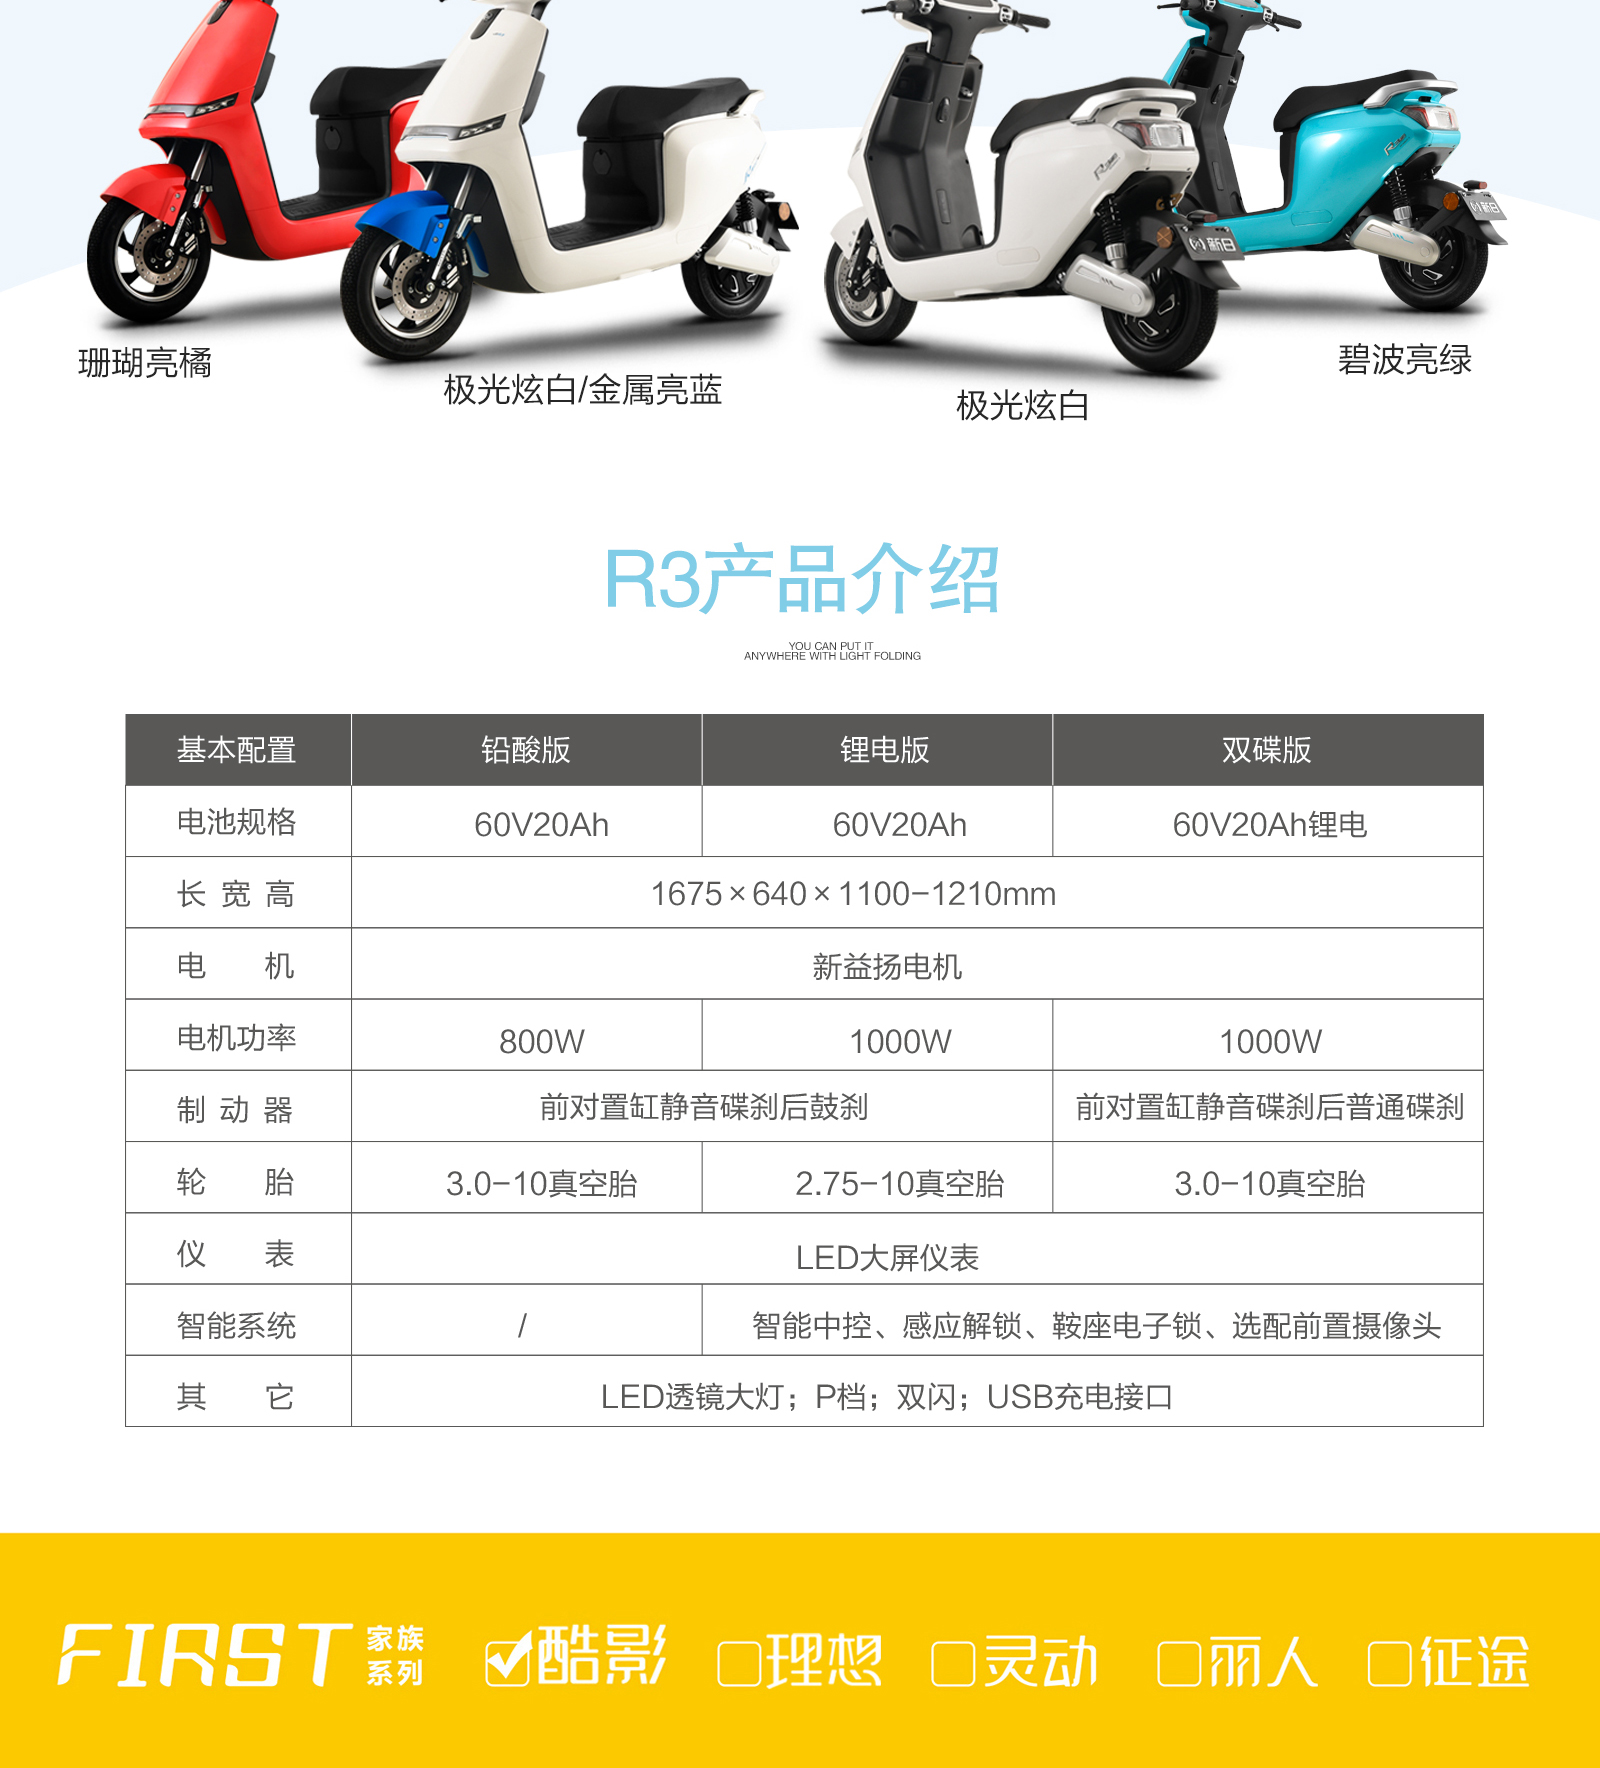 【新日(sunra)电动车】 新日(sunra)电动车 电动摩托车 r3 高端代步